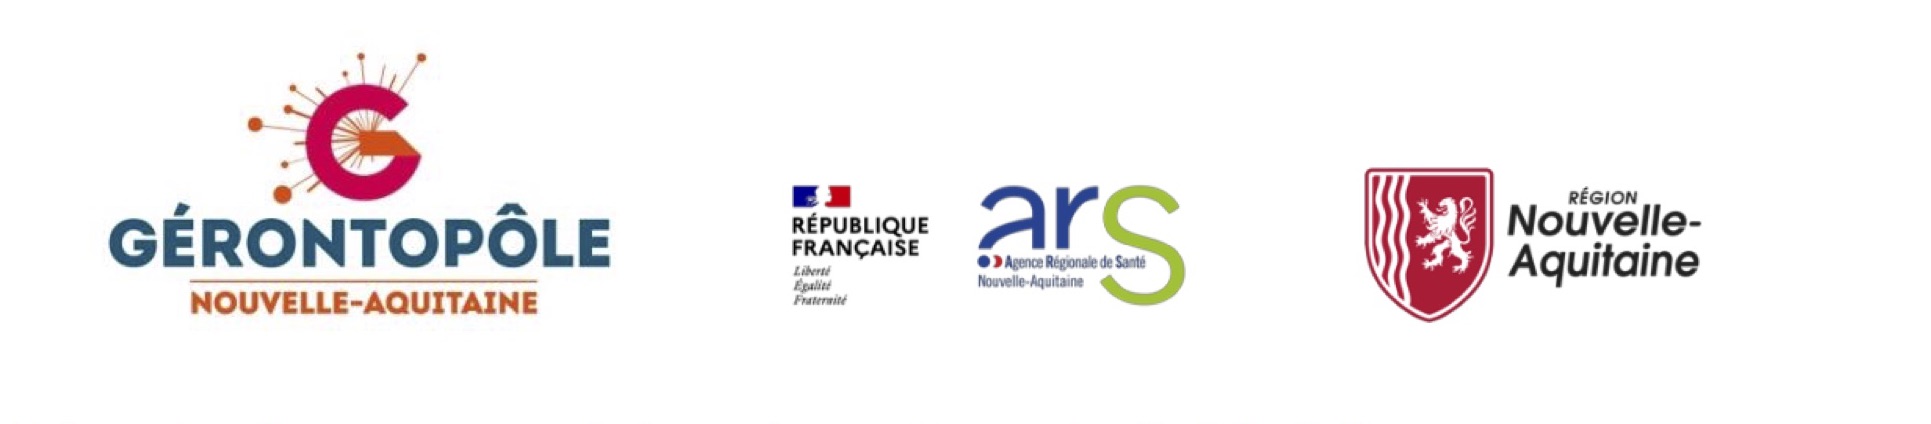 Pénurie de personnel dans le secteur de l’aide à la personne : Le Gérontopôle Nouvelle-Aquitaine se mobilise avec l’appui de l’ARS et de la Région